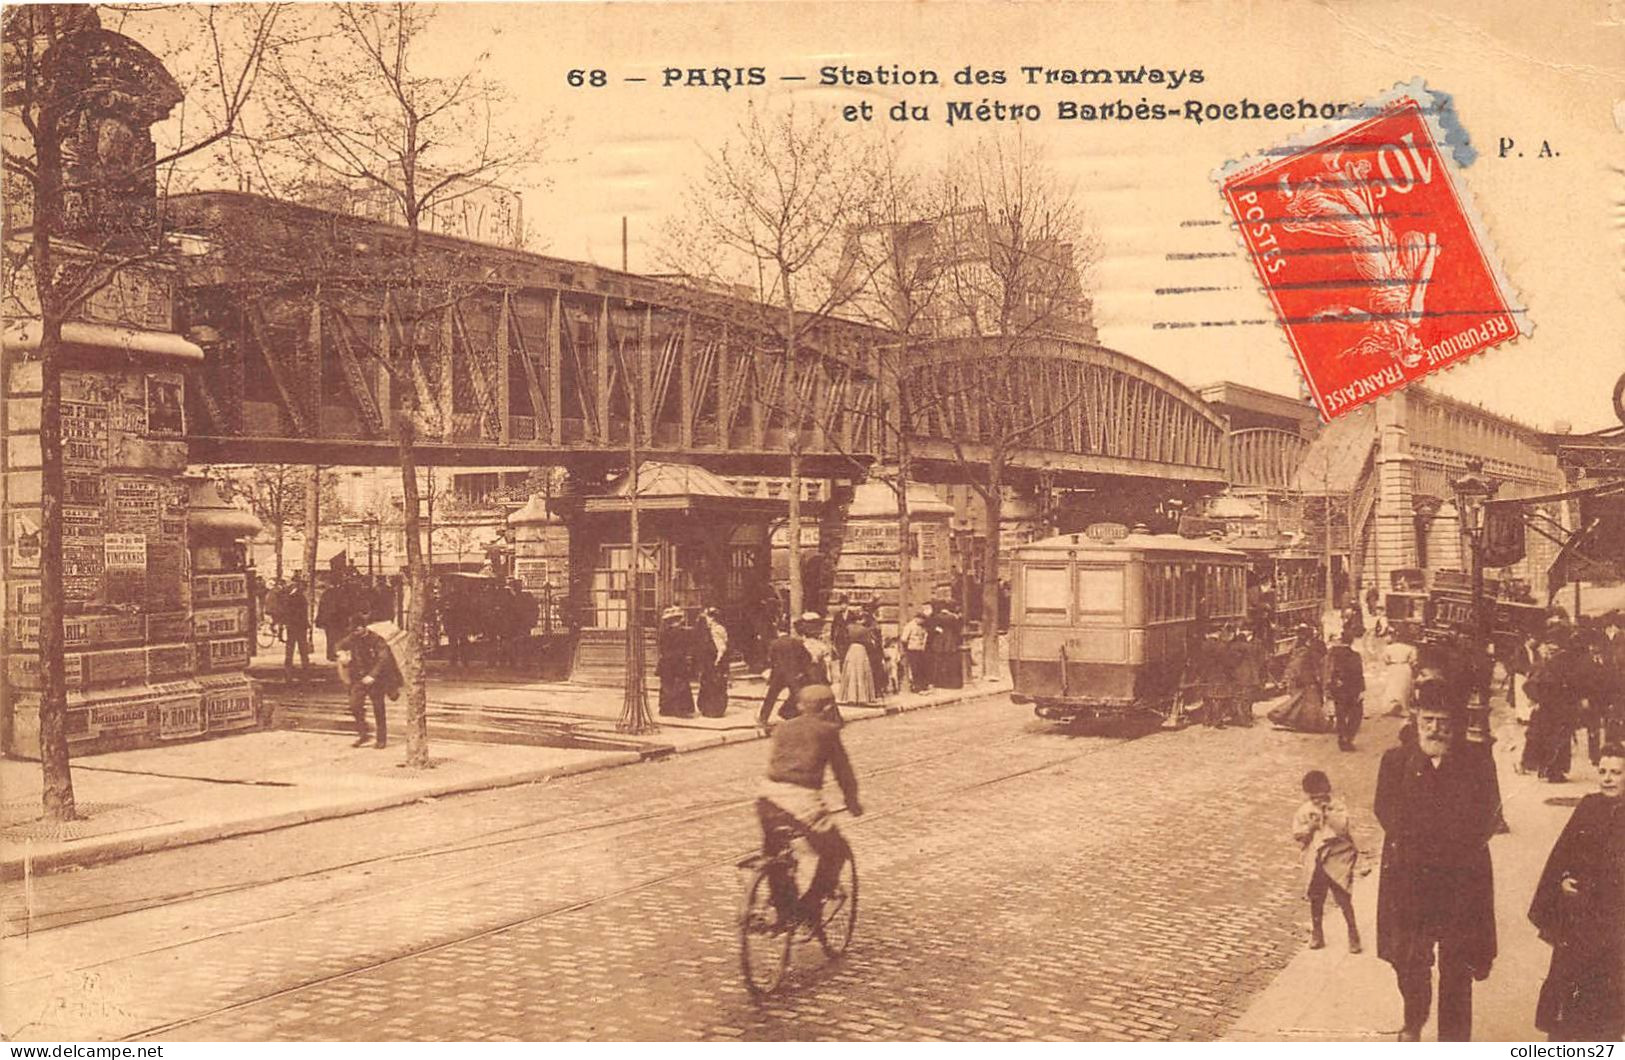 PARIS- STATION DES TRAMWAYS ET DU METRO BARBES-ROCHECHOUART - Stations, Underground